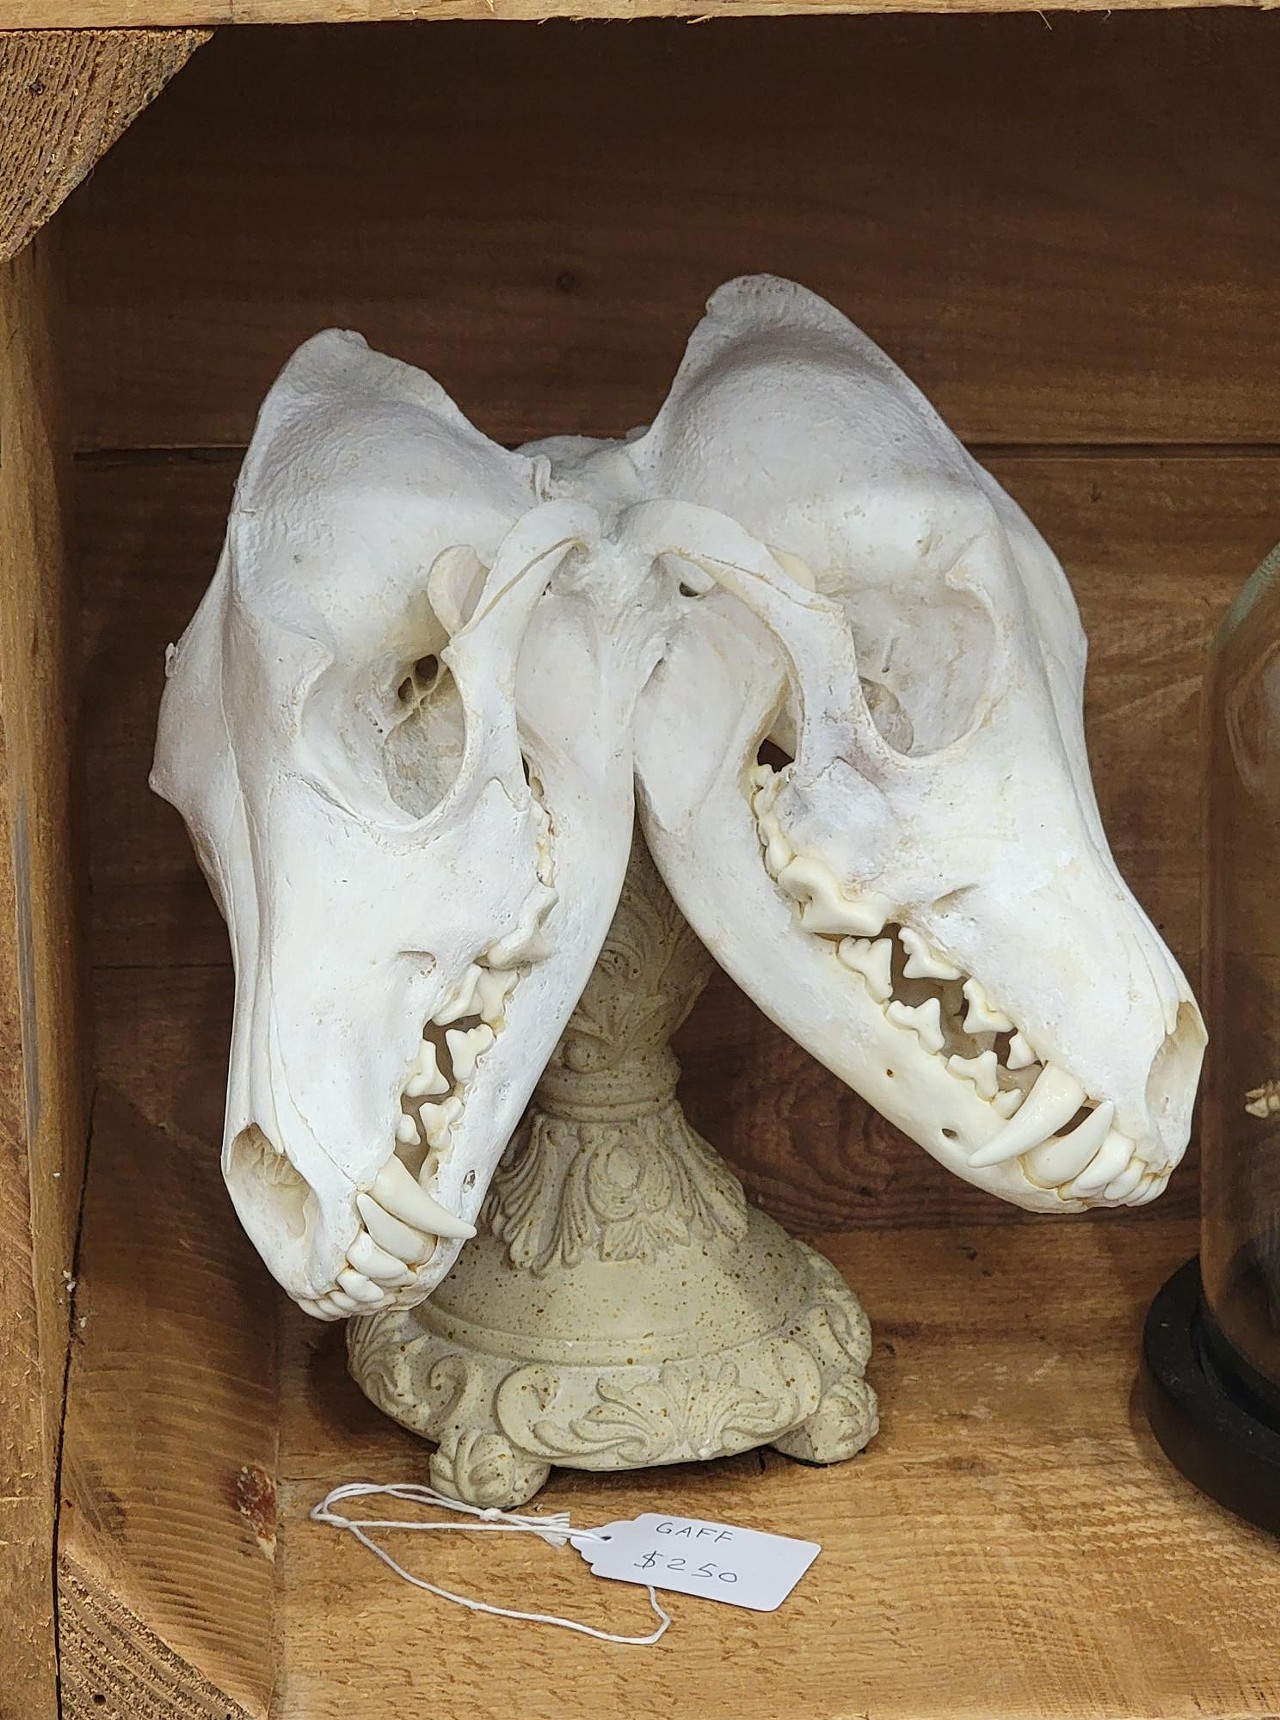 Two-headed skull